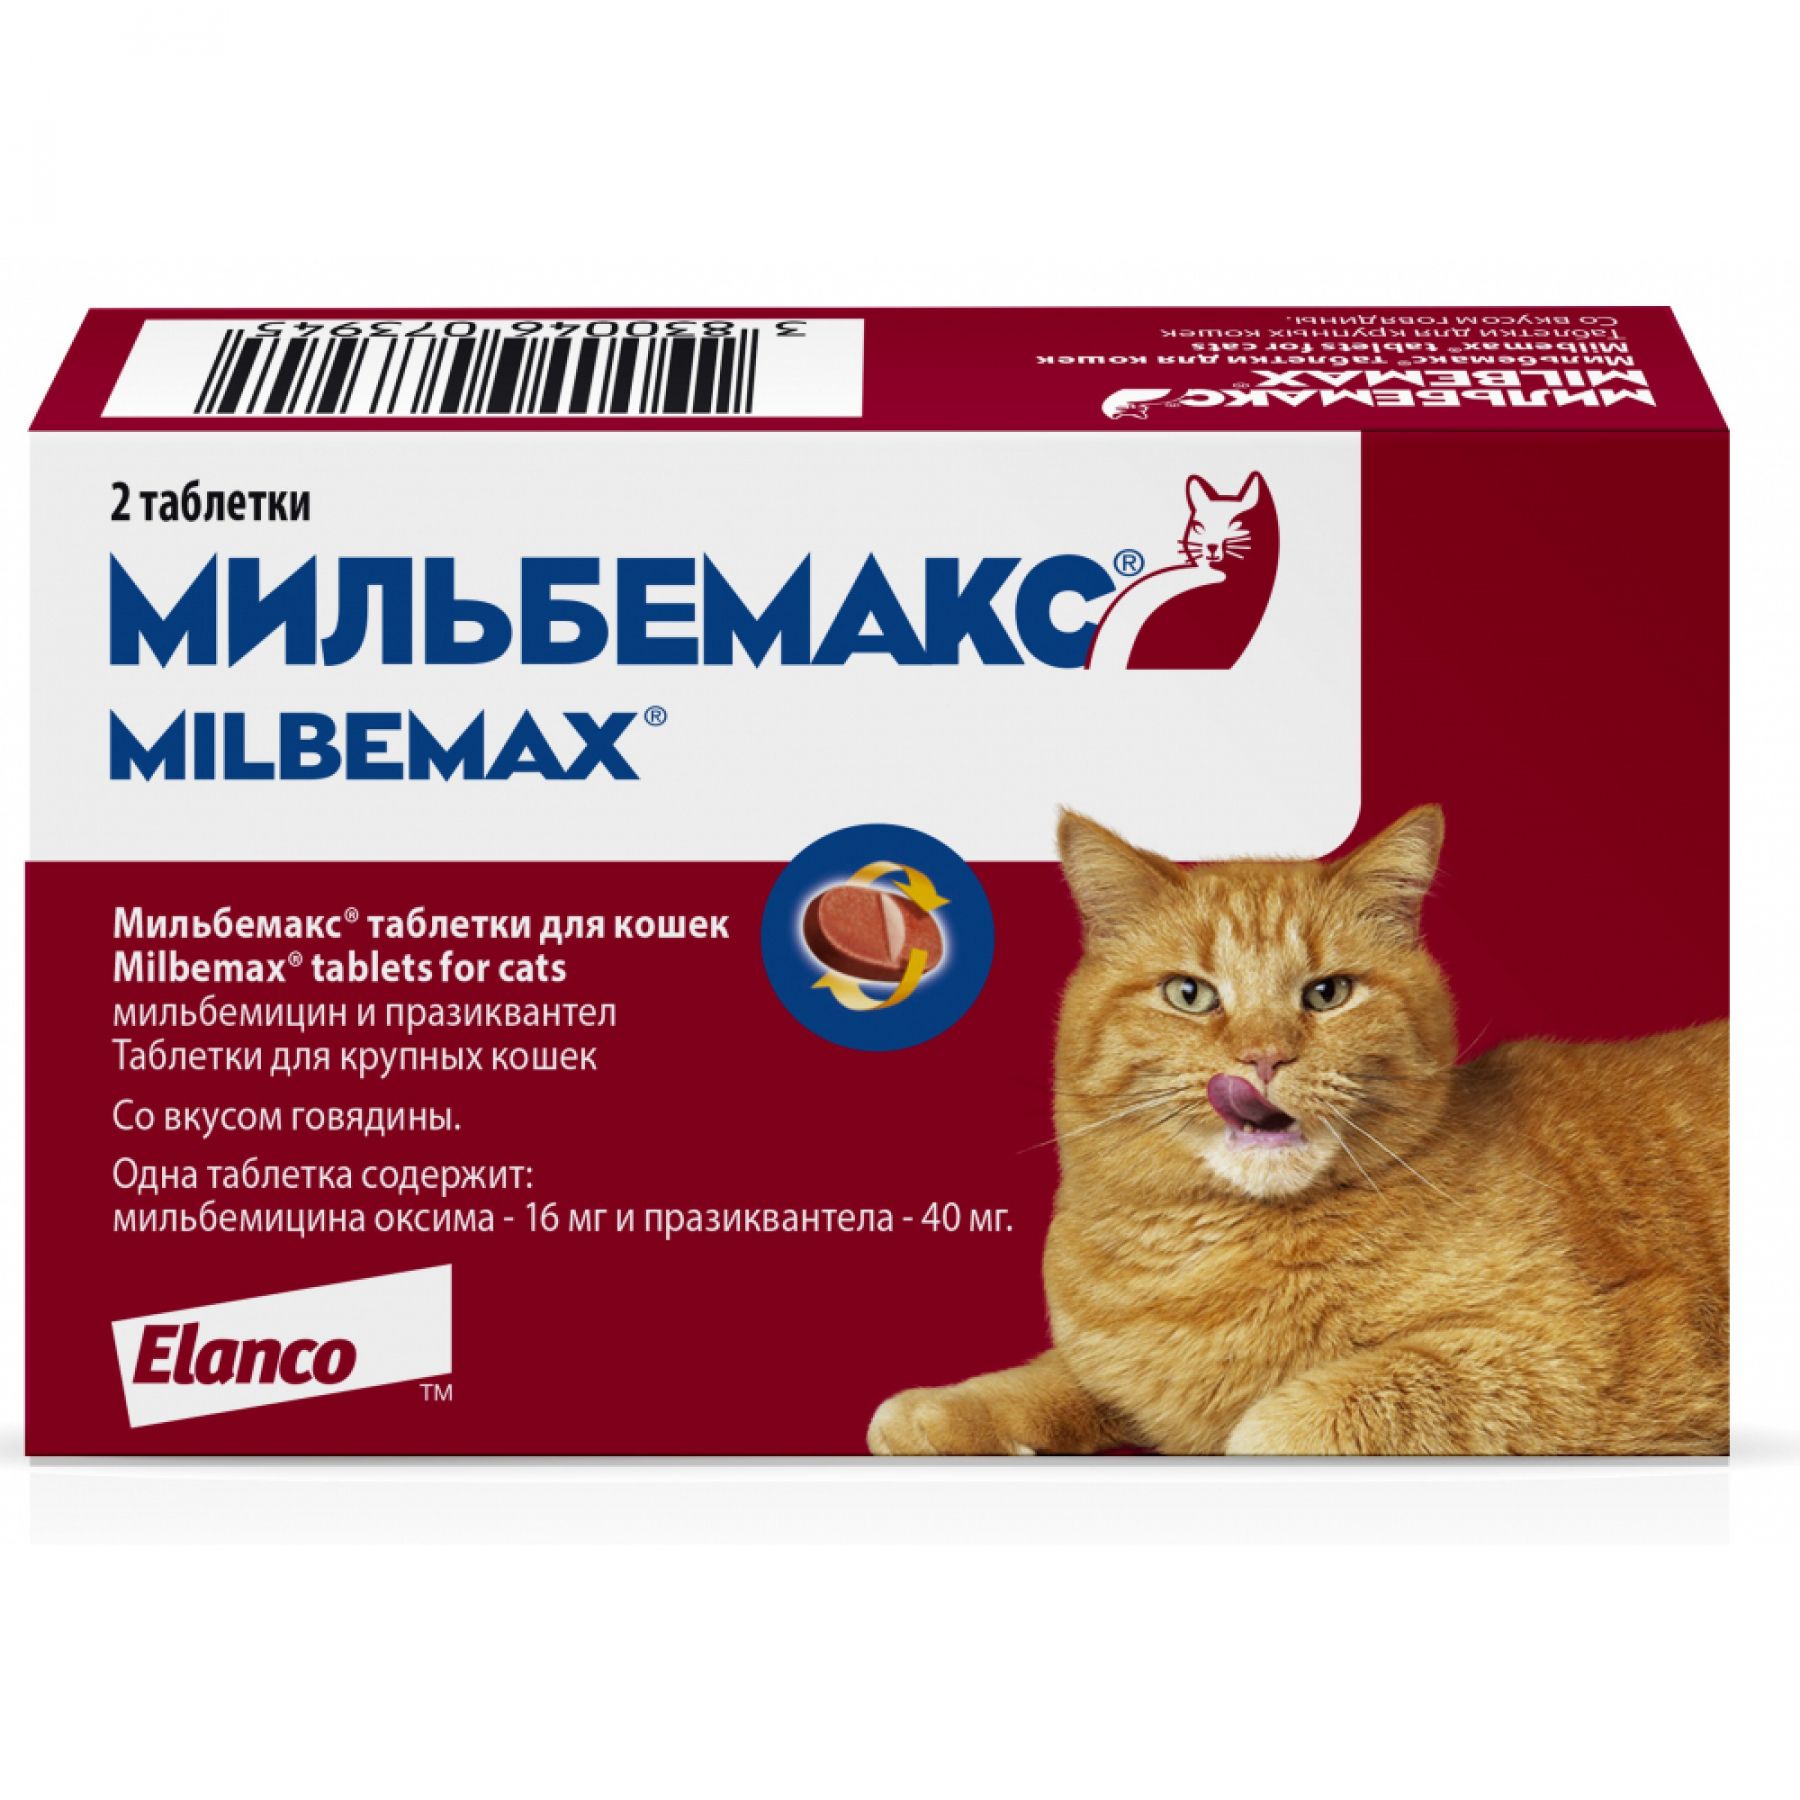 Купить лекарства кошки. Таблетки от глистов для кошек Мильбемакс. Мильбемакс антигельминтик для кошек (16/40 мг) уп 2 таб. Мильбемакс для кошек 1 таб.. Elanco Мильбемакс для котят и молодых кошек (2 таблетки).